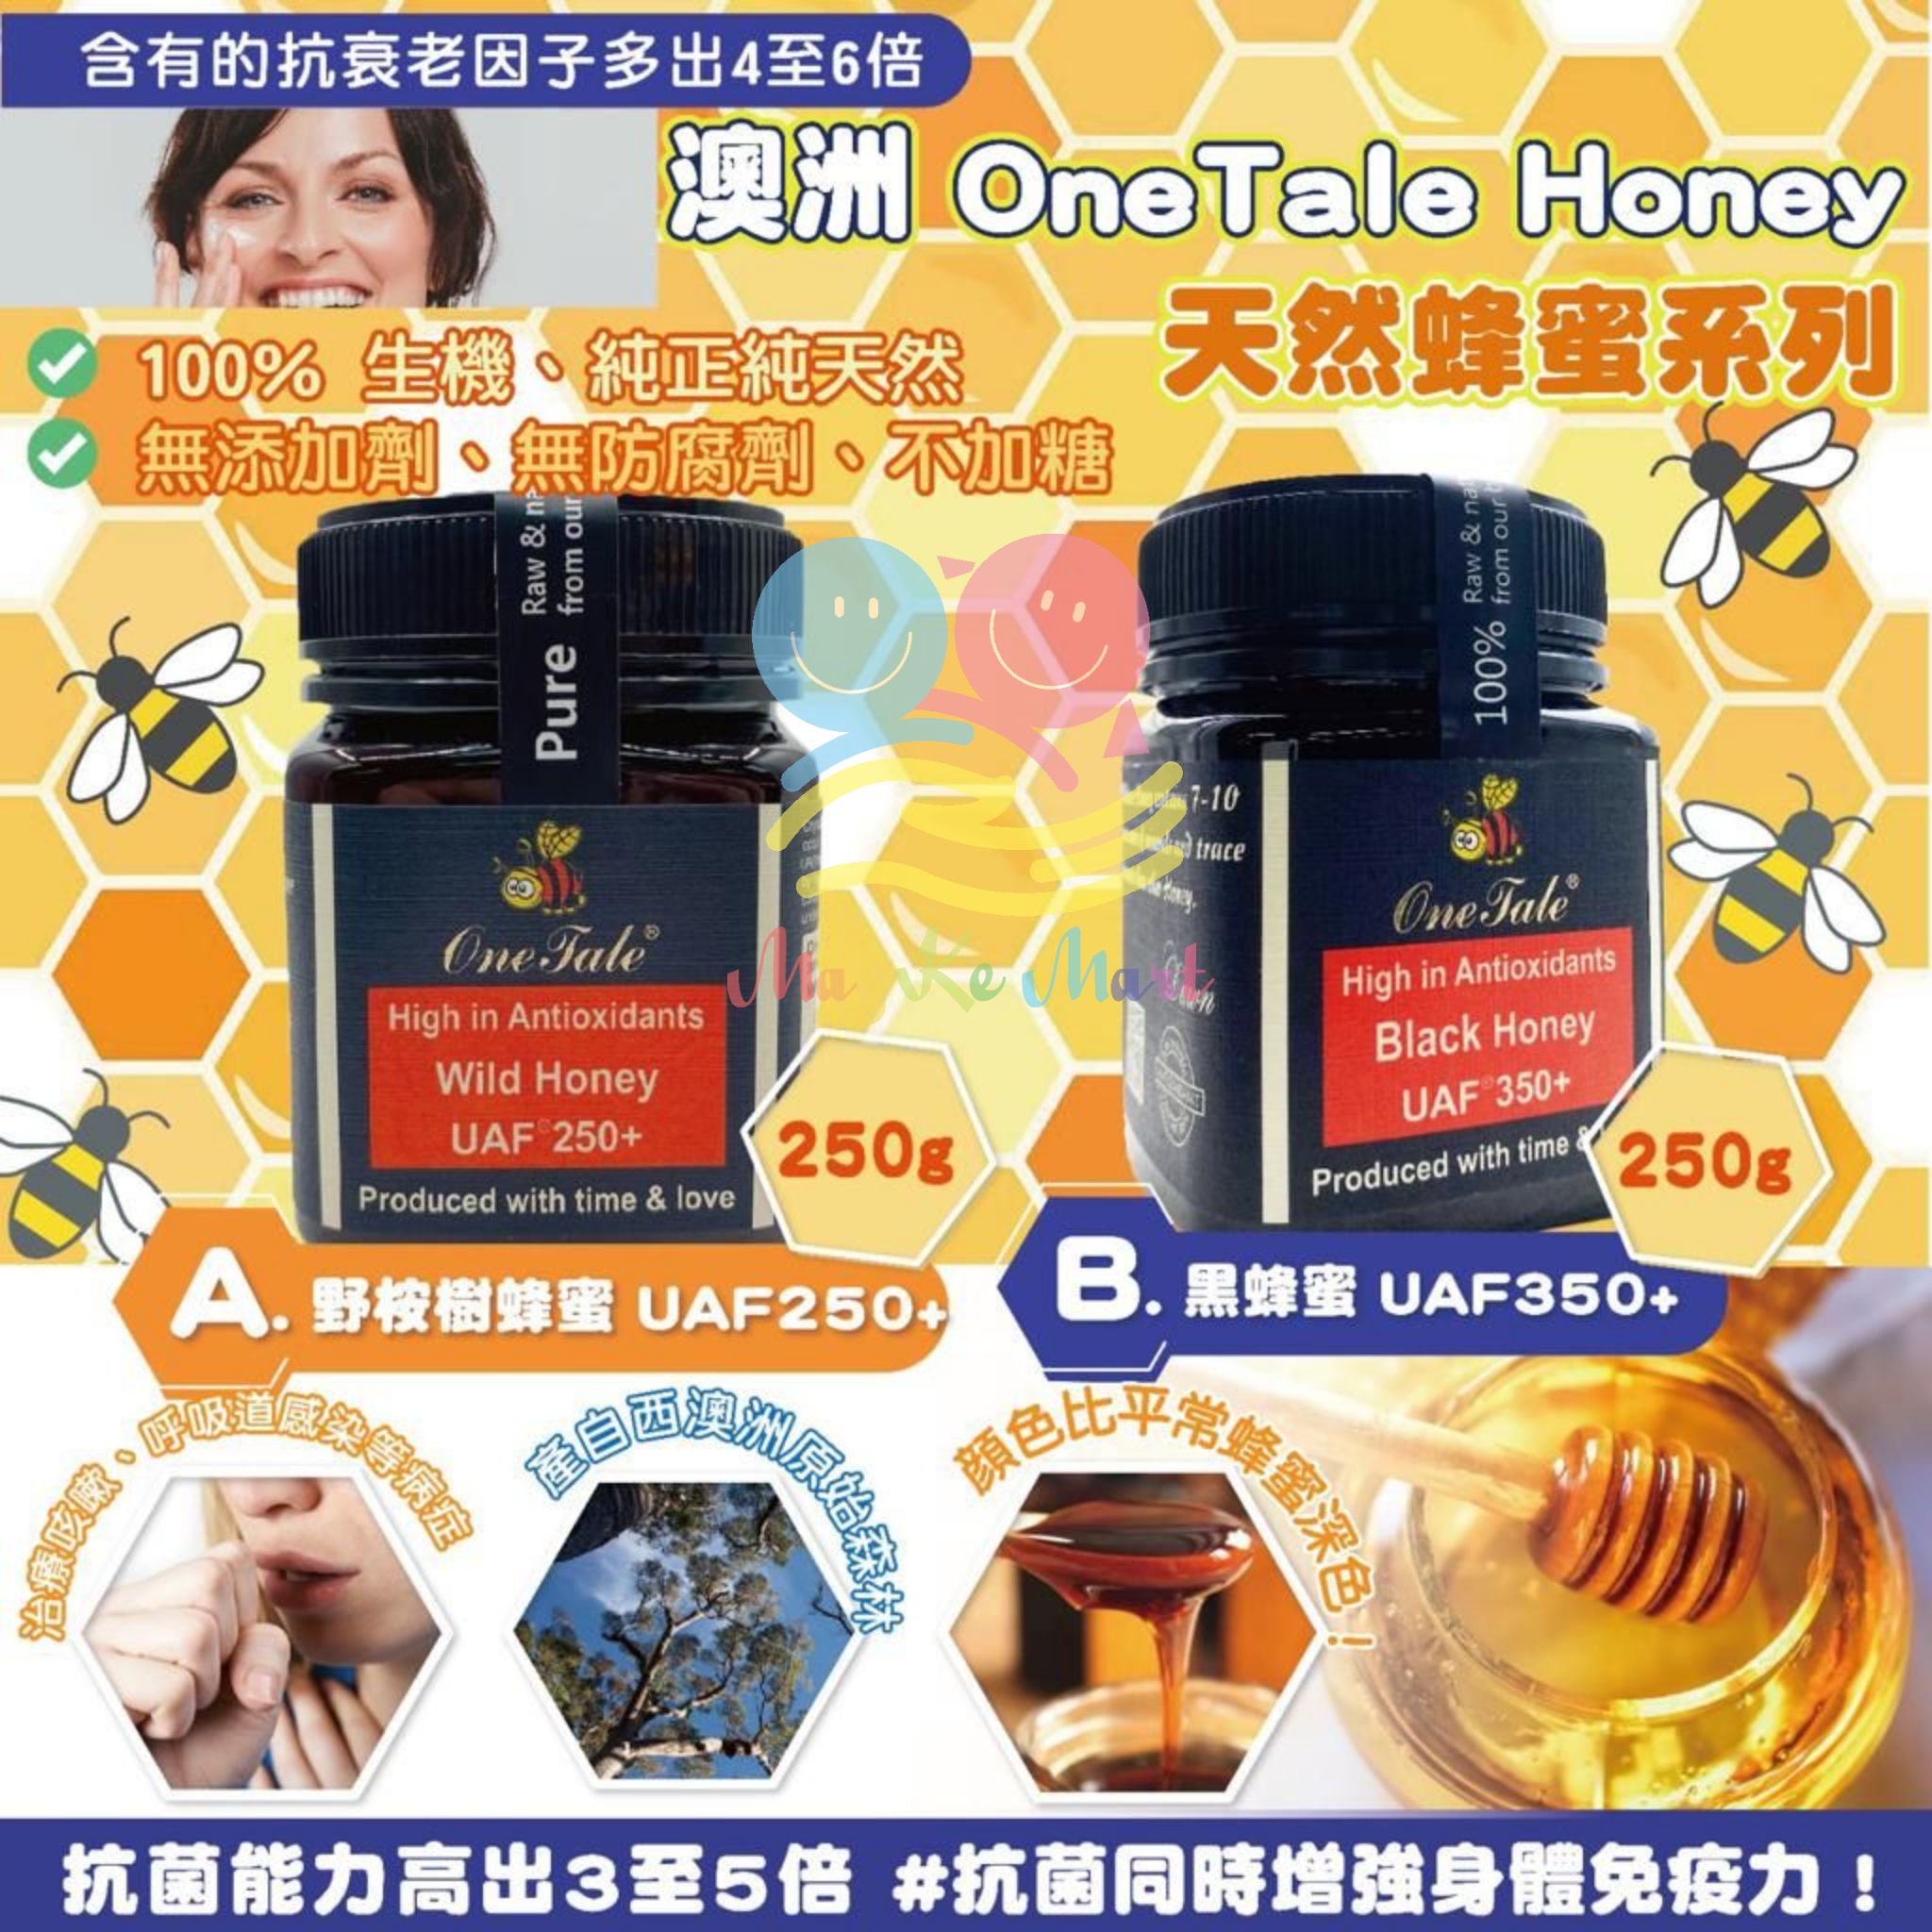 澳洲 OneTale Honey 天然蜂蜜系列 250g (B) 黑蜂蜜 UAF350＋